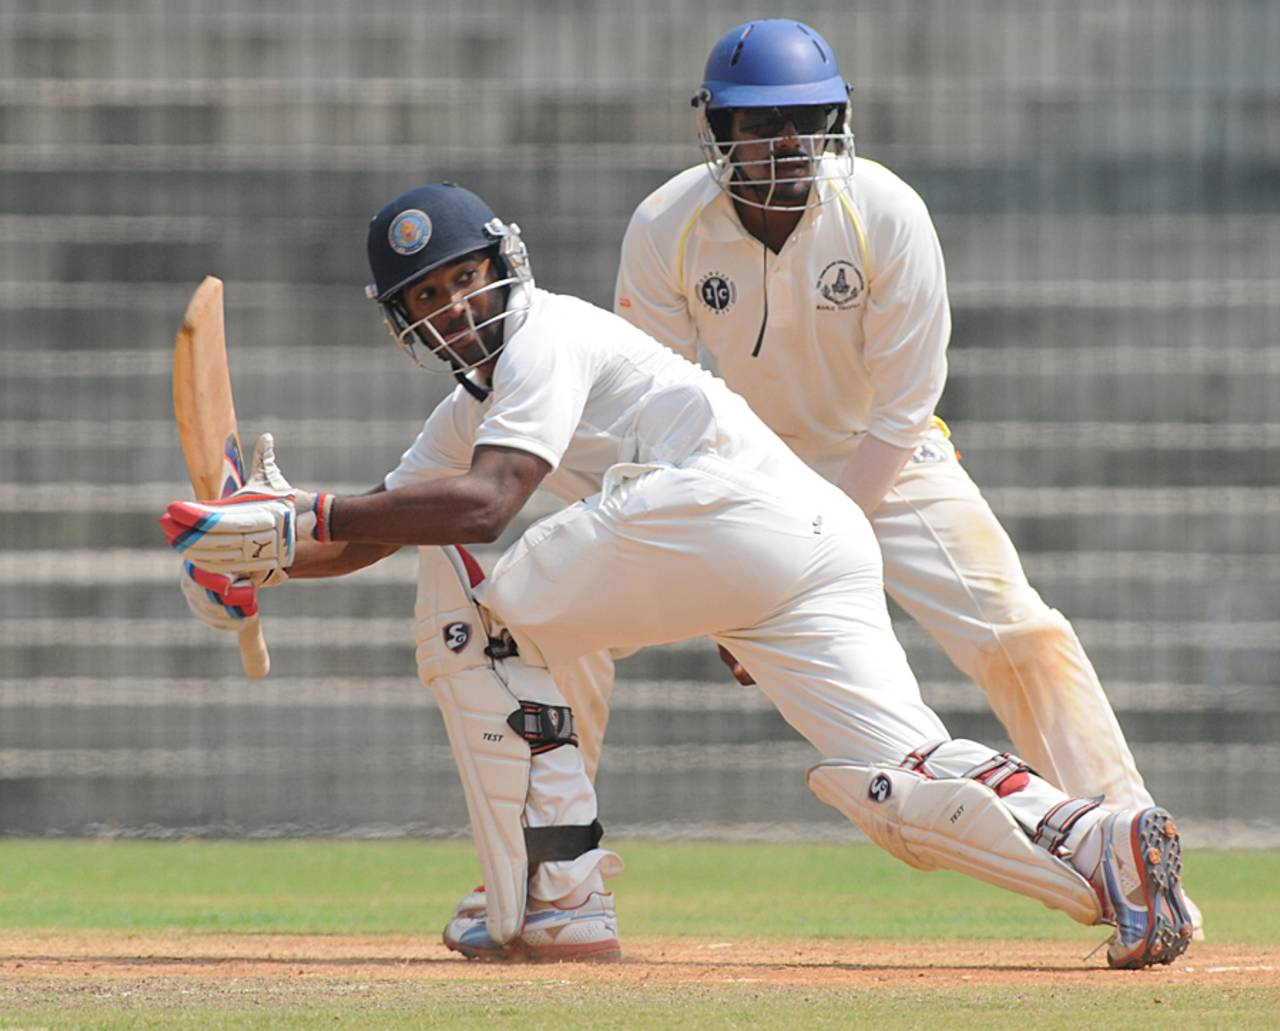 File photo - CM Gautam: 'The wicket is on slower side, so stroke-play is not that easy'&nbsp;&nbsp;&bull;&nbsp;&nbsp;K Sivaraman